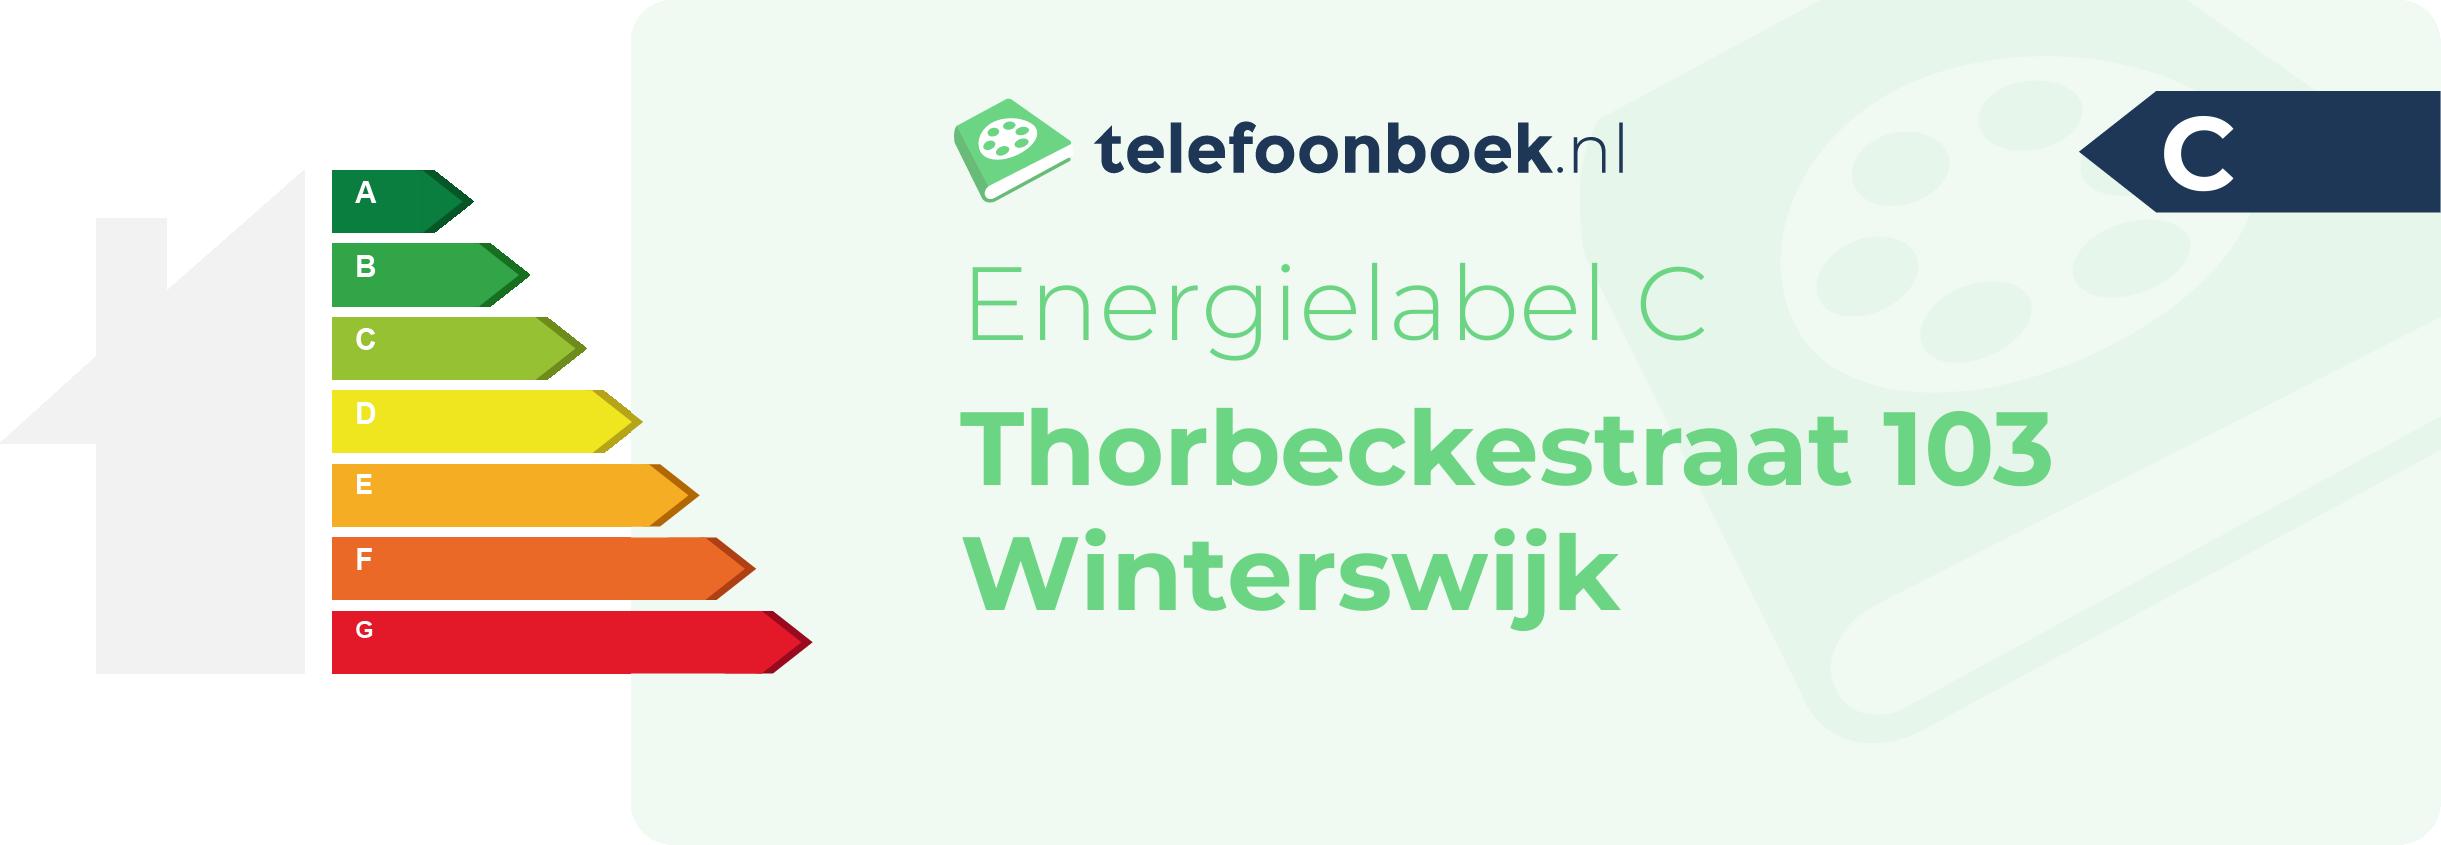 Energielabel Thorbeckestraat 103 Winterswijk